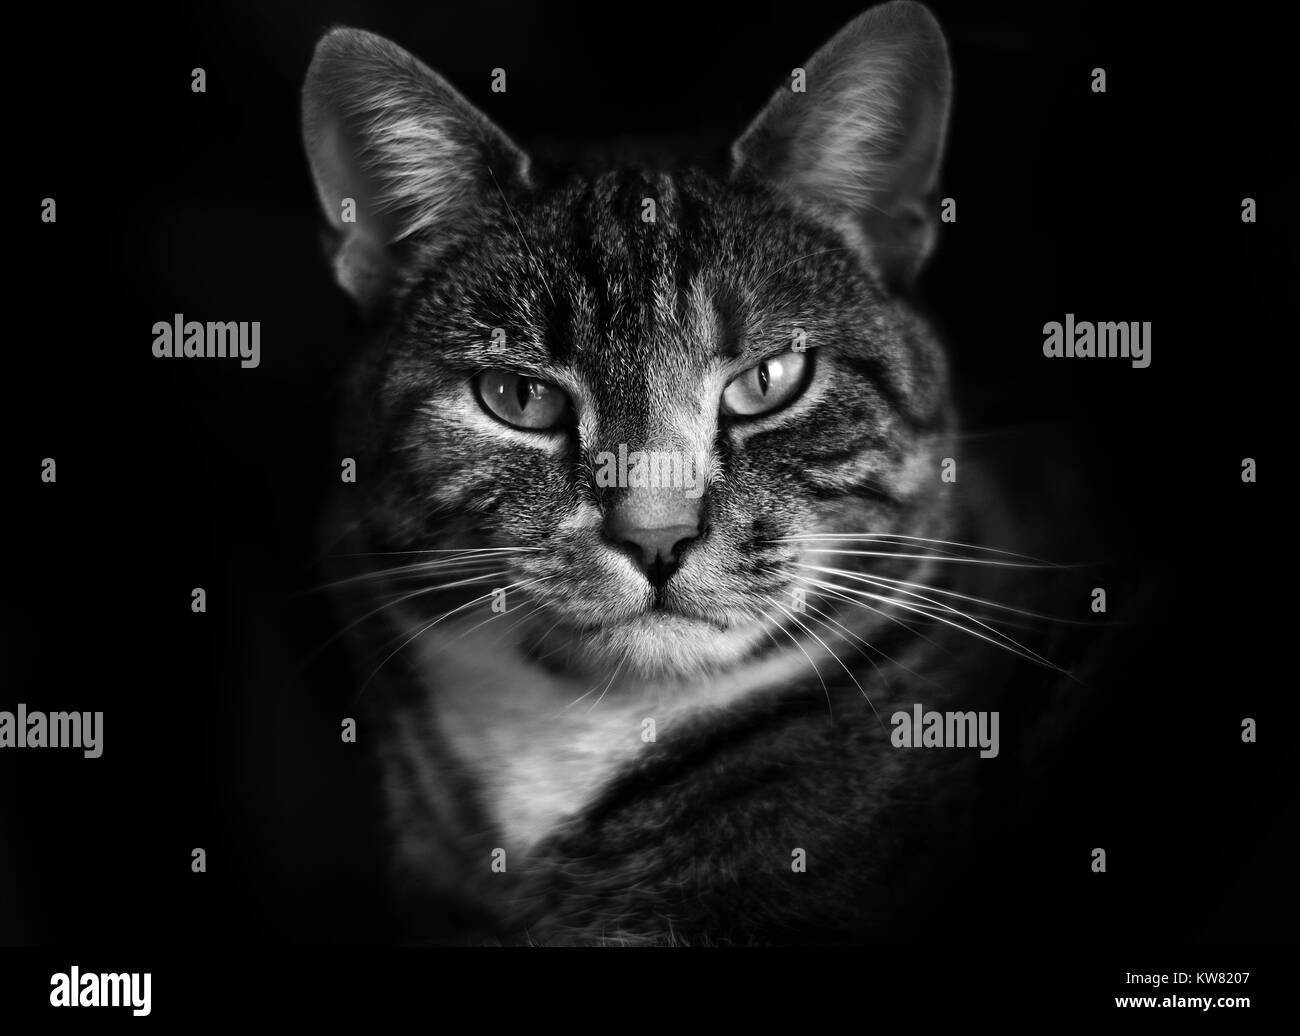 Retrato de un gato atigrado en blanco y negro Foto de stock